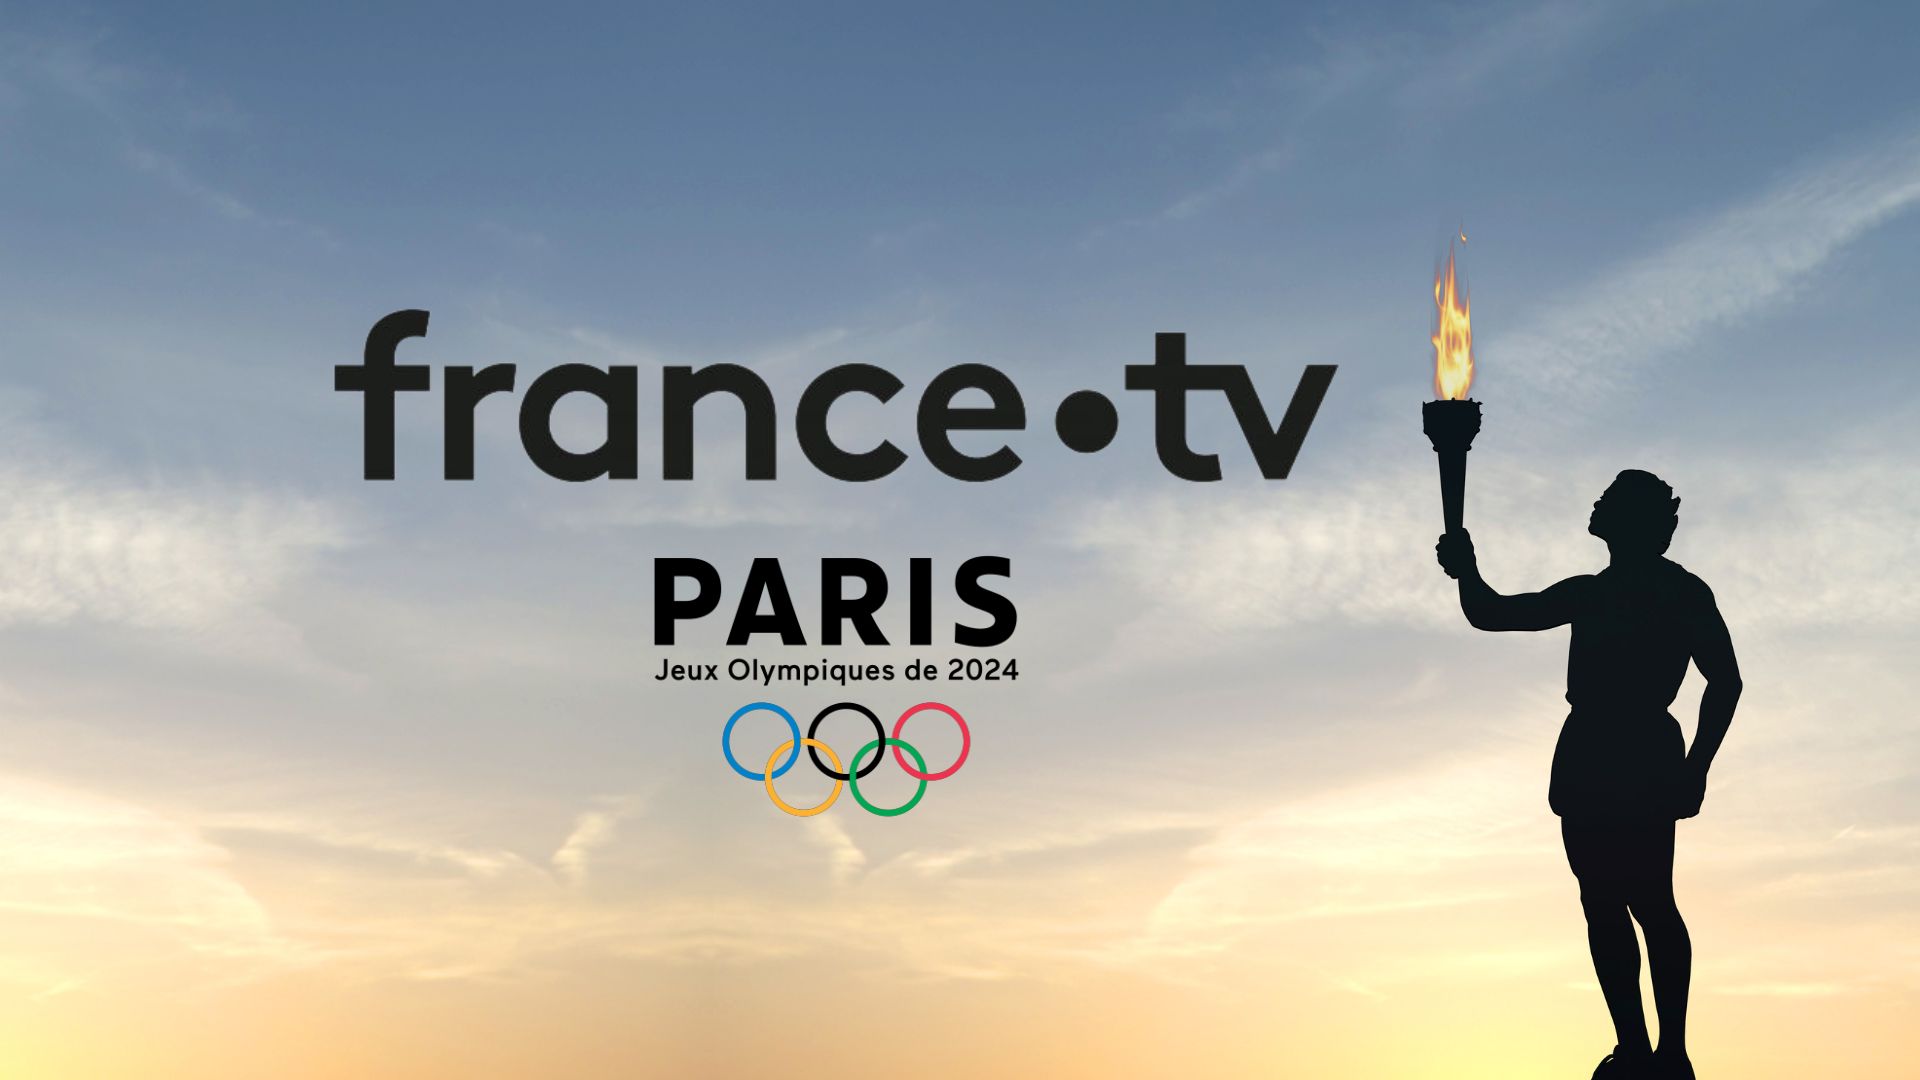 france.tv PARIS 2024,100% Cloud et 5G… Une première dans l’histoire de l’audiovisuel